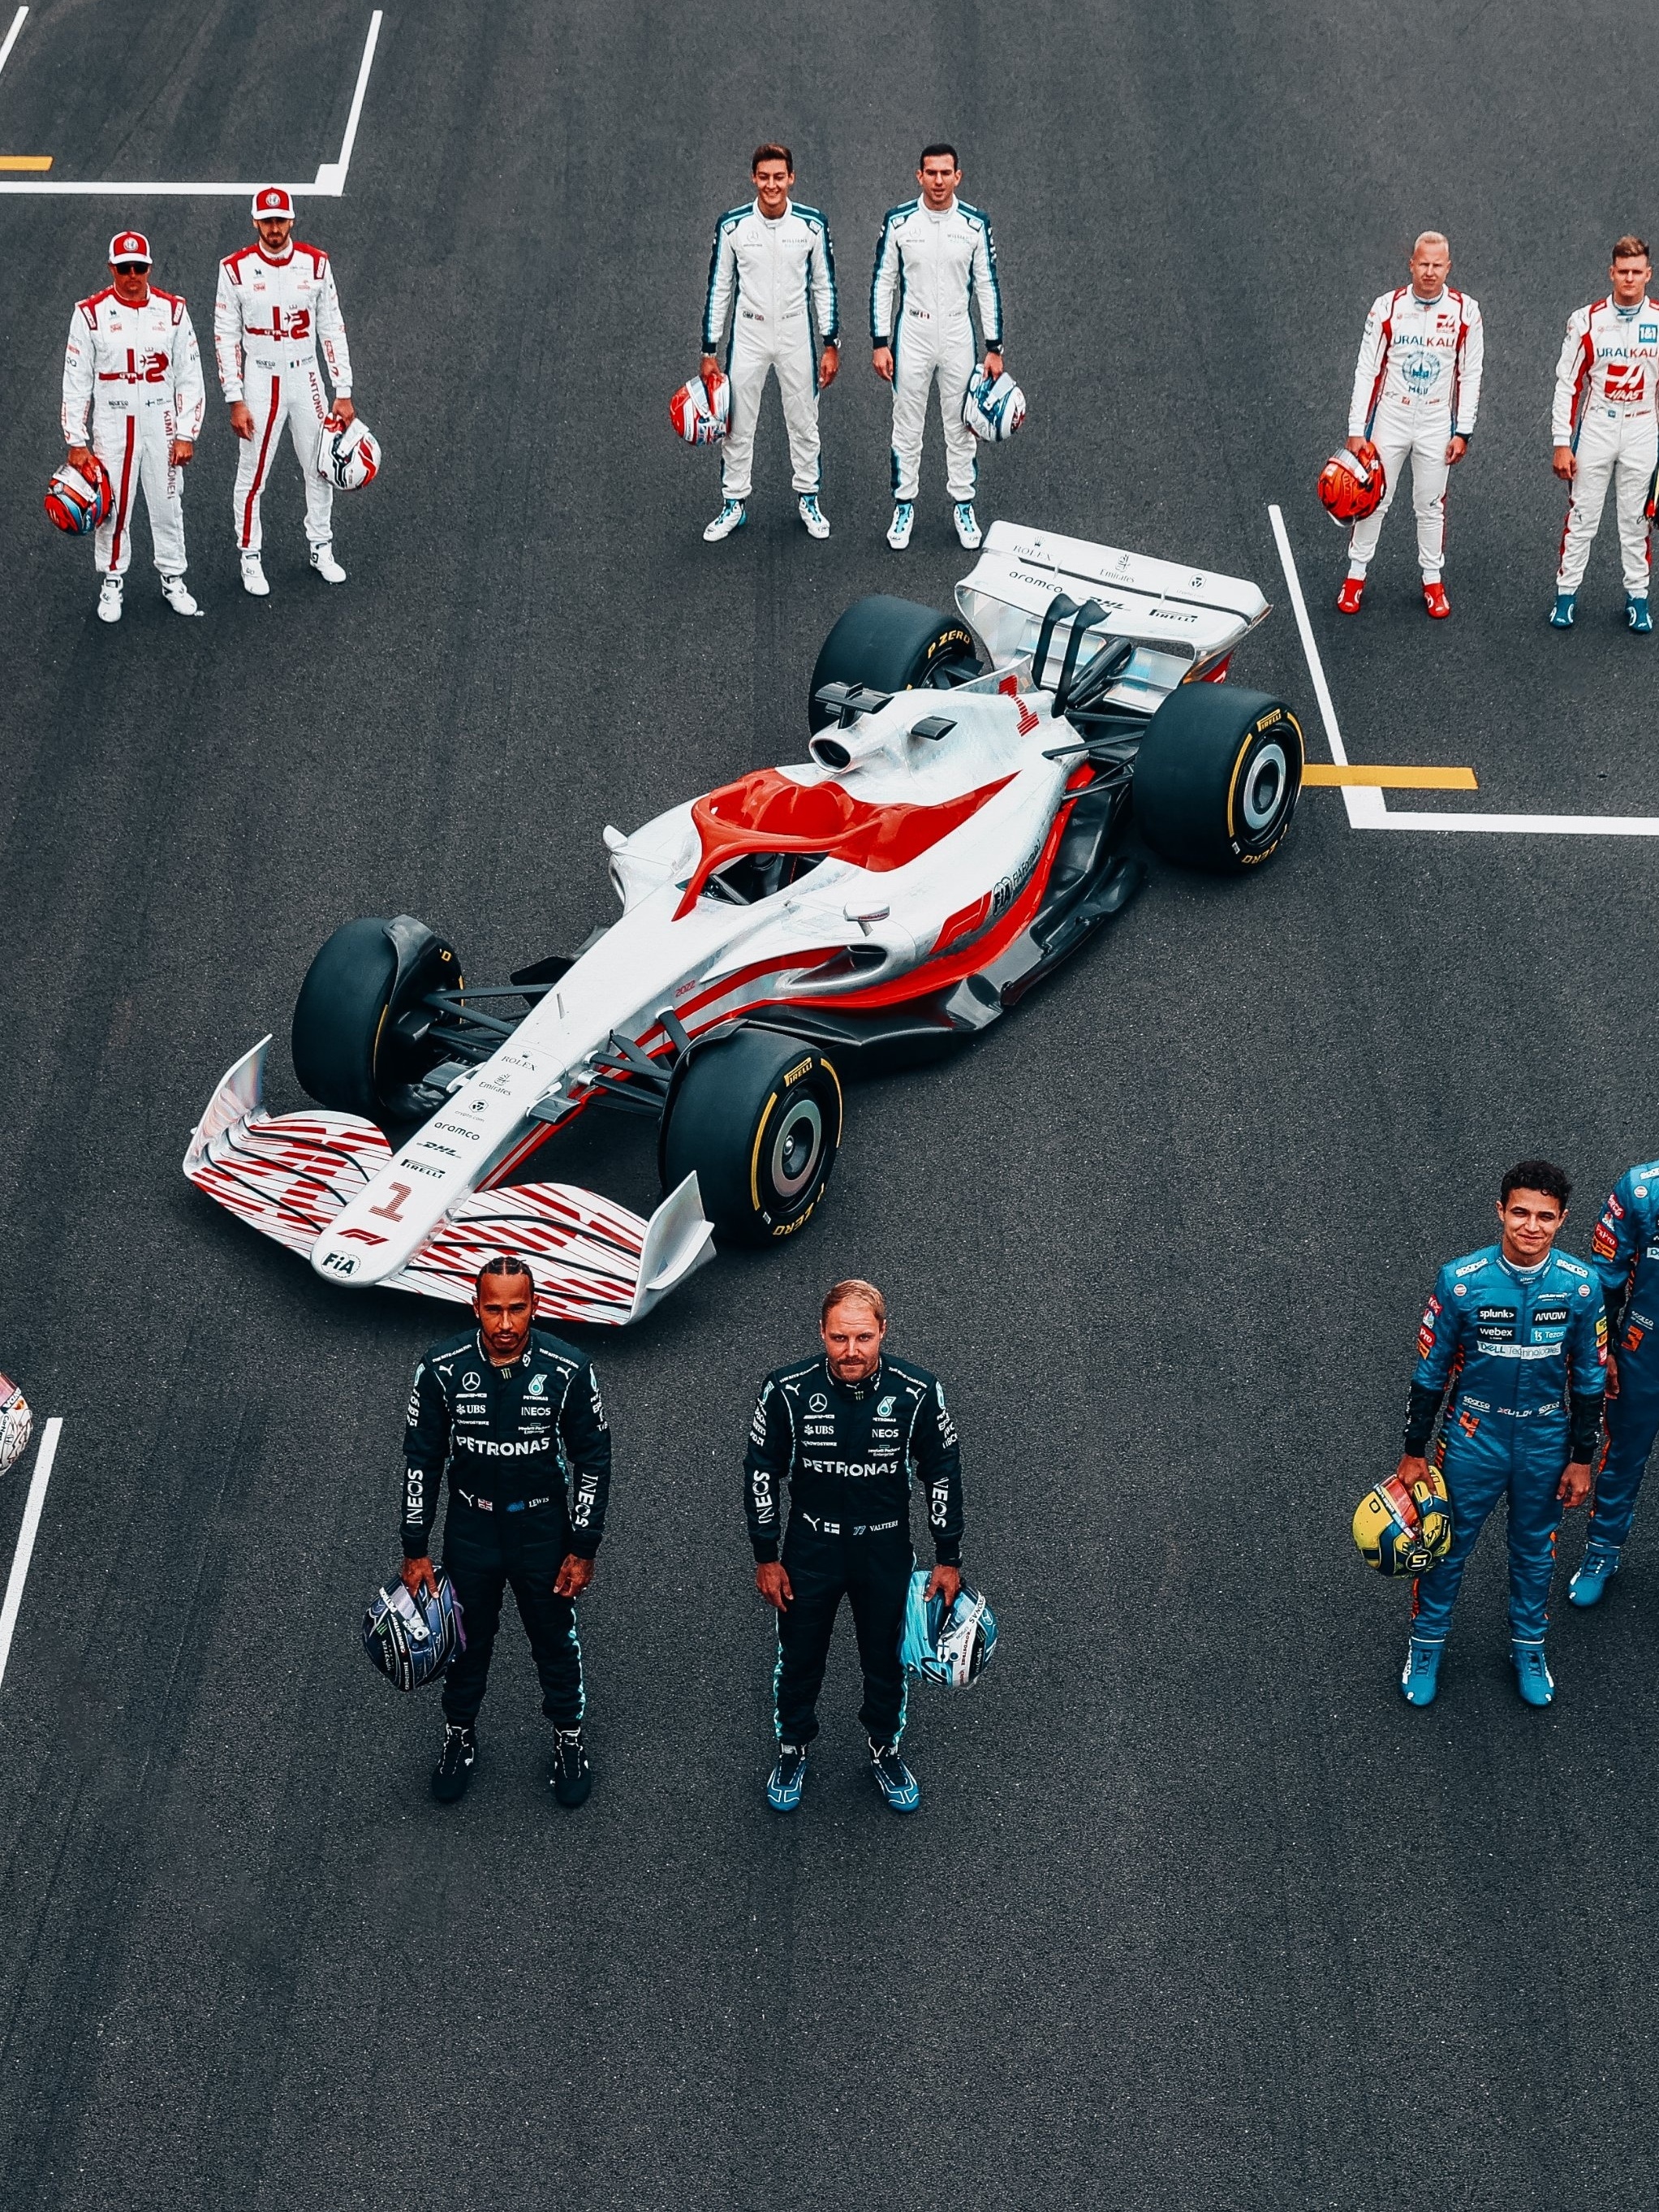 Quantas vezes os pilotos de F1 podem trocar os componentes dos carros?